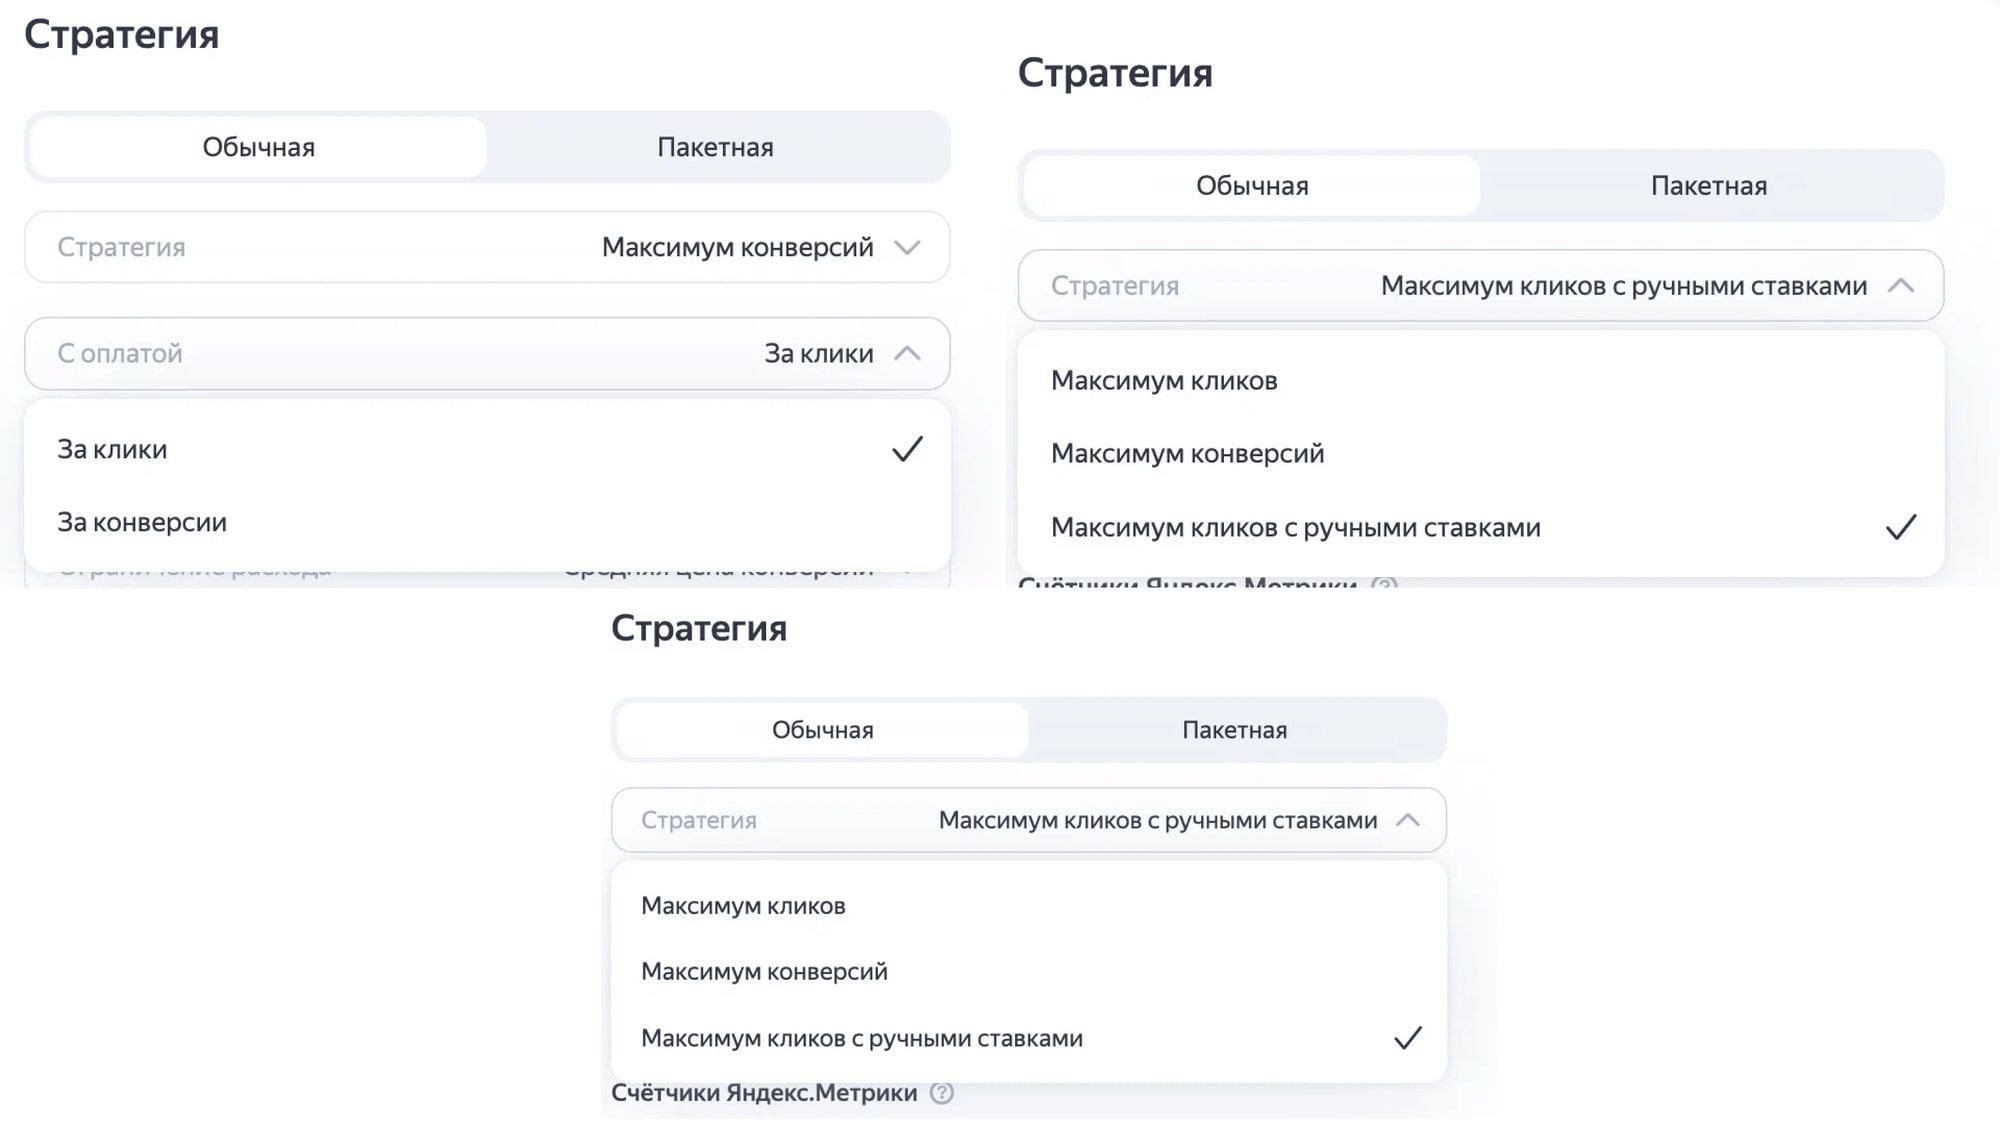 Как получать больше лидов и продаж с Яндекс.Директ